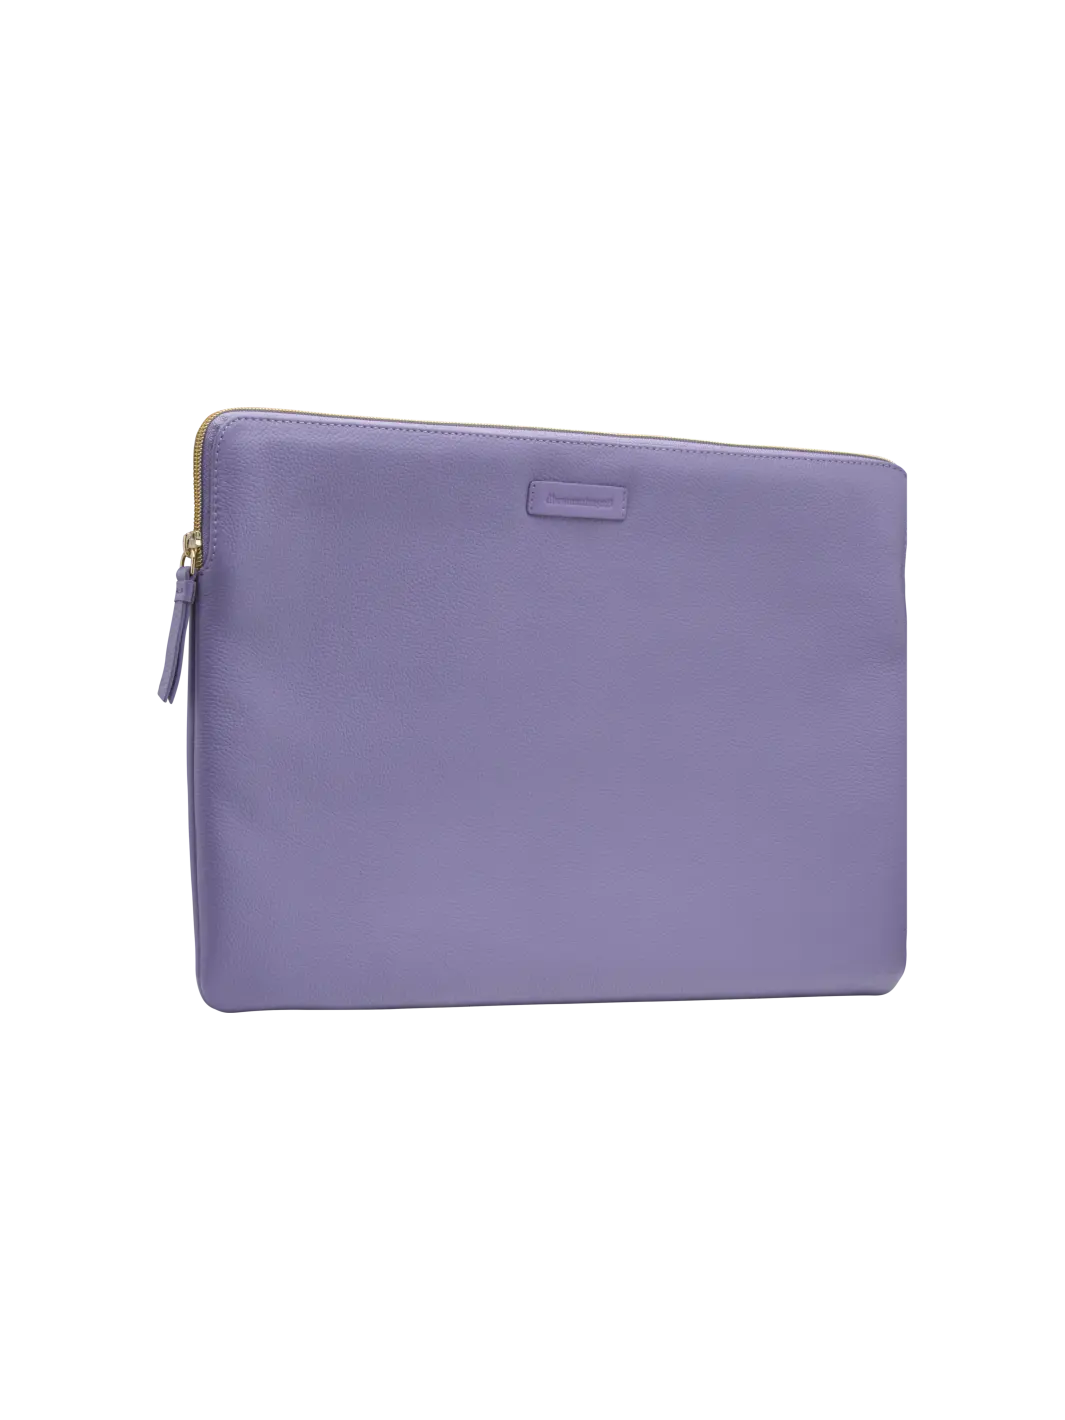 Paris Daybreak Purple MacBook Pro 16" (2019) Laptop sleeves